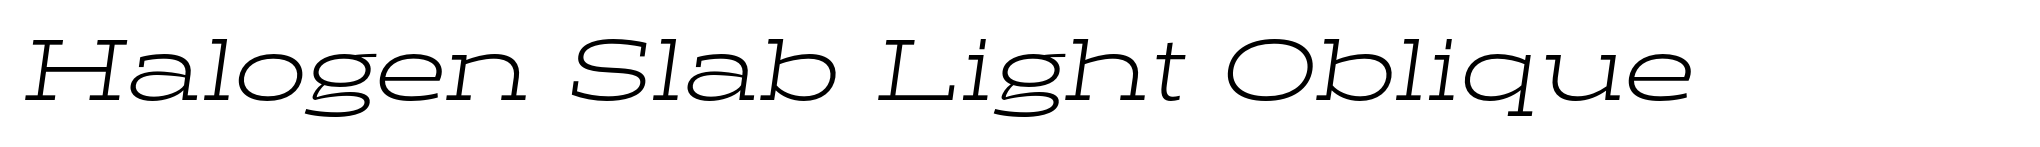 Halogen Slab Light Oblique image